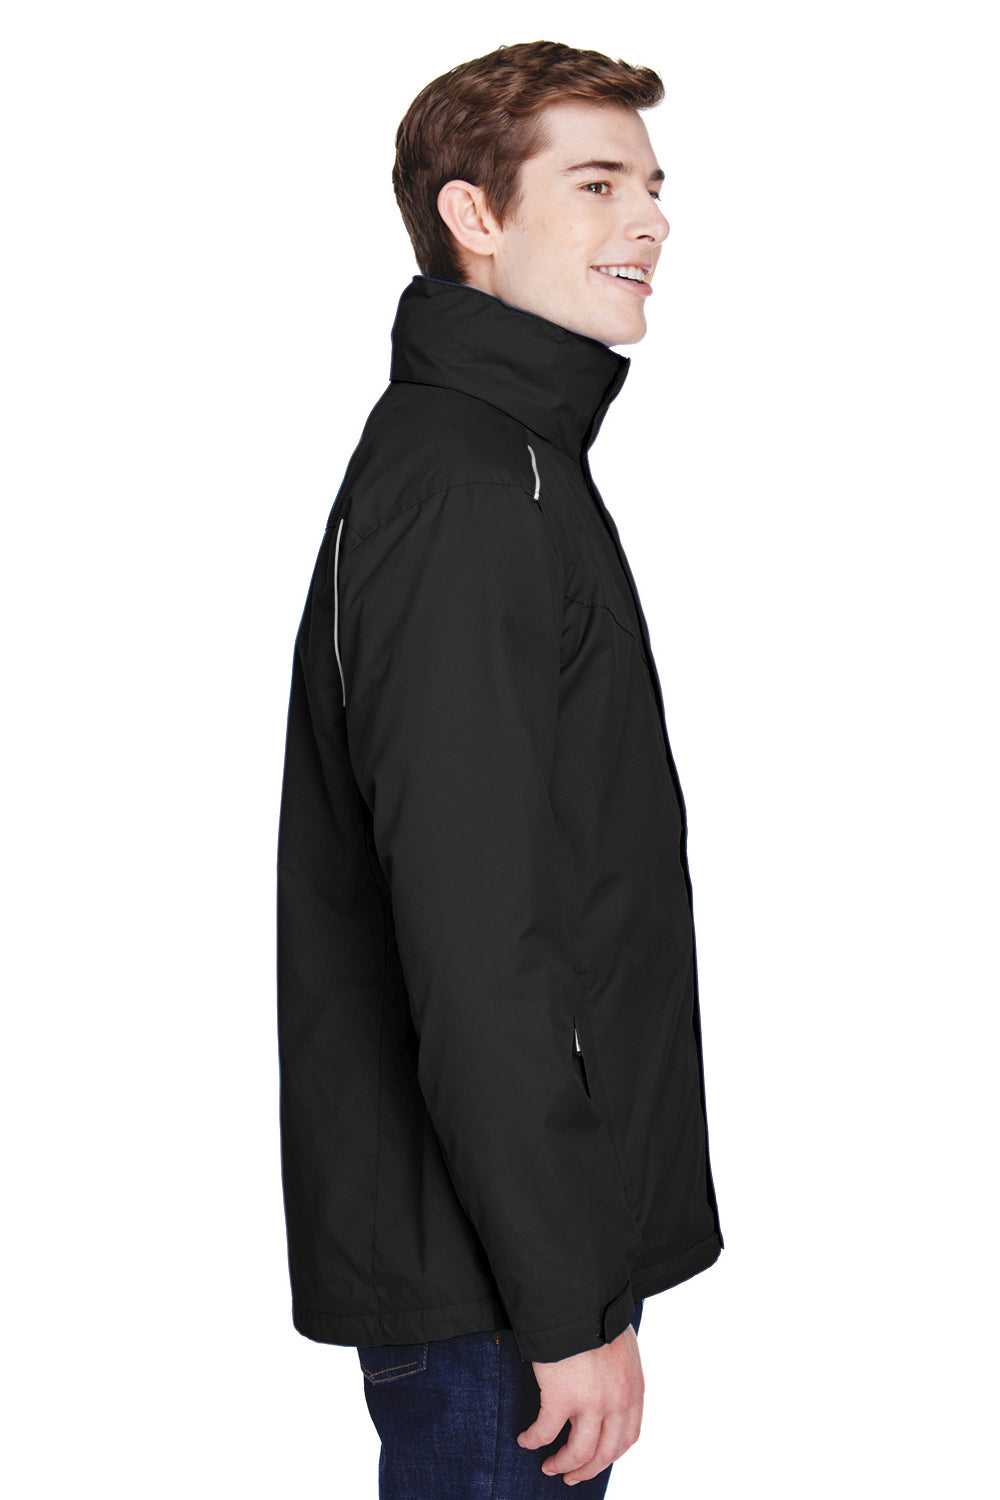 Core 365 88205 Mens Region 3-in-1 Water Resistant Full Zip Hooded Jacket Black Side